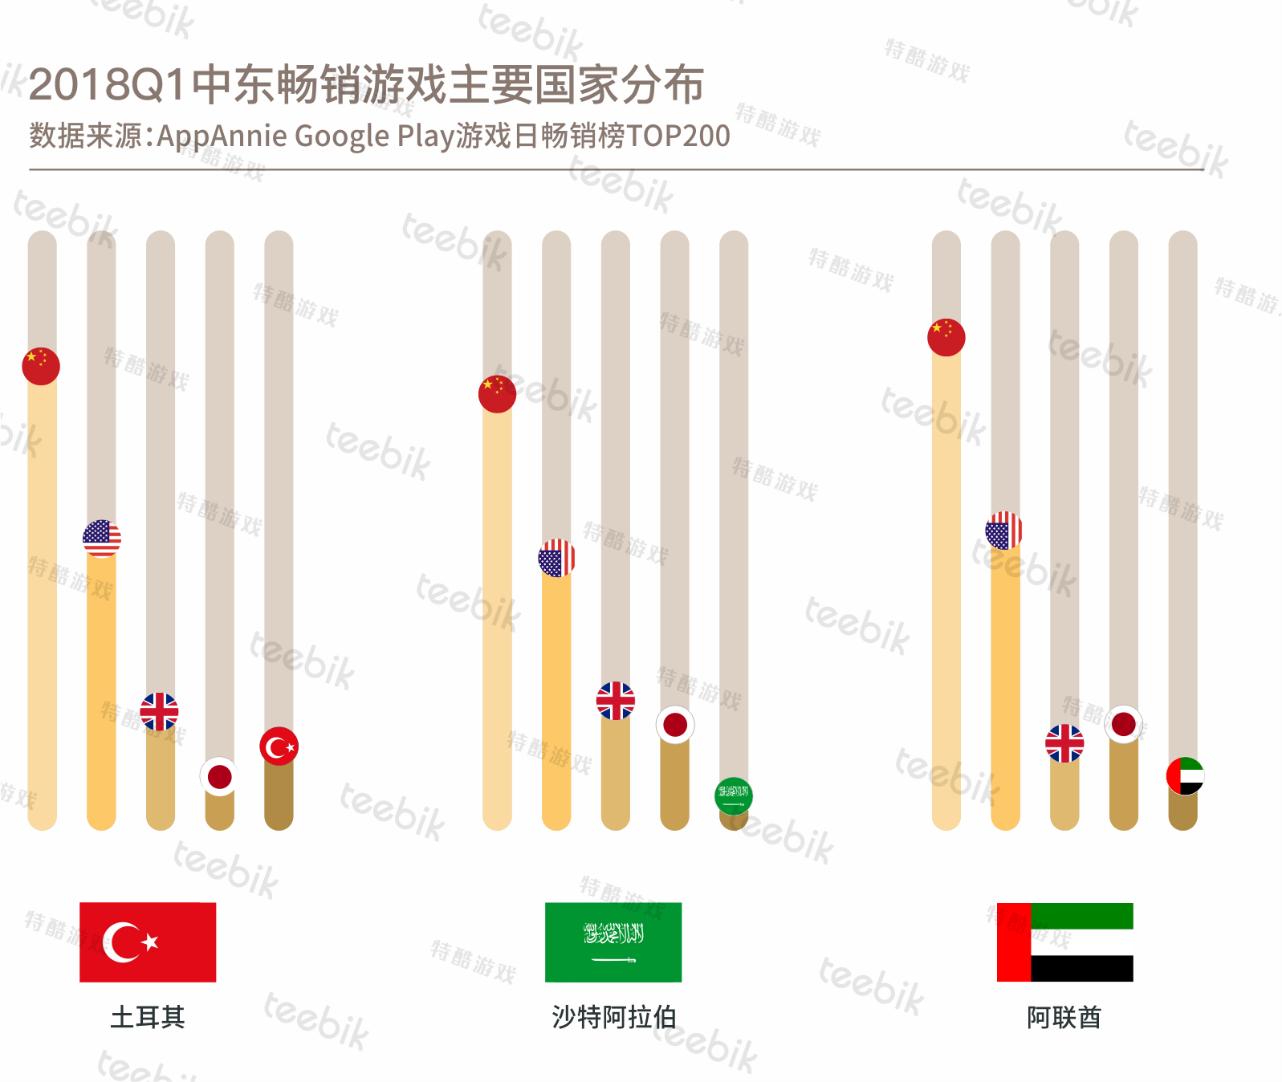 中国游领衔中东市场 土耳其本土公司多专注博彩游戏